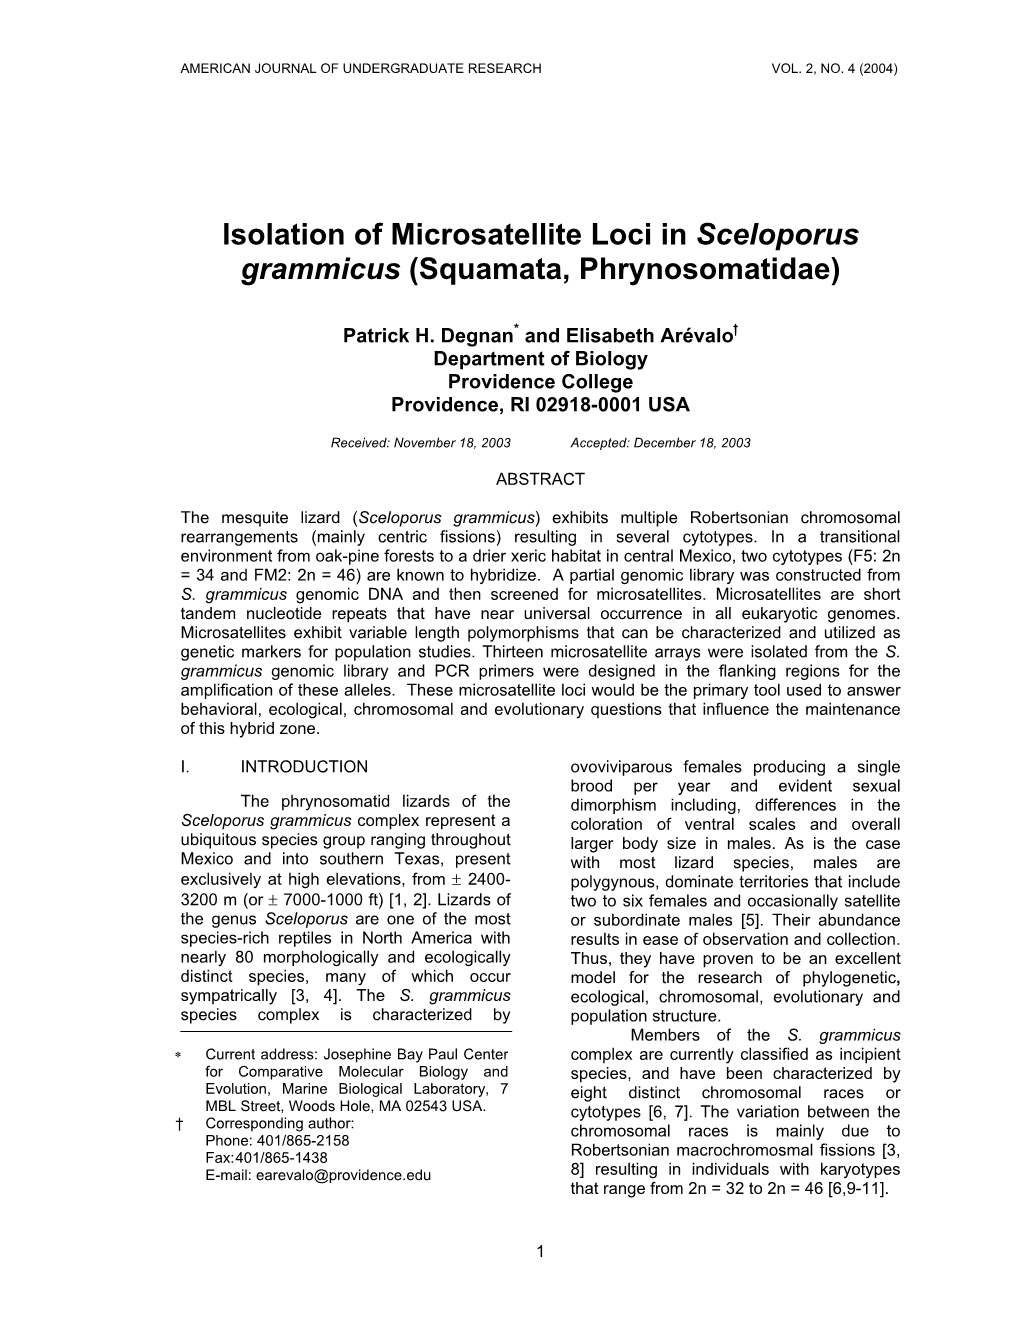 Isolation of Microsatellite Loci in Sceloporus Grammicus (Squamata, Phrynosomatidae)